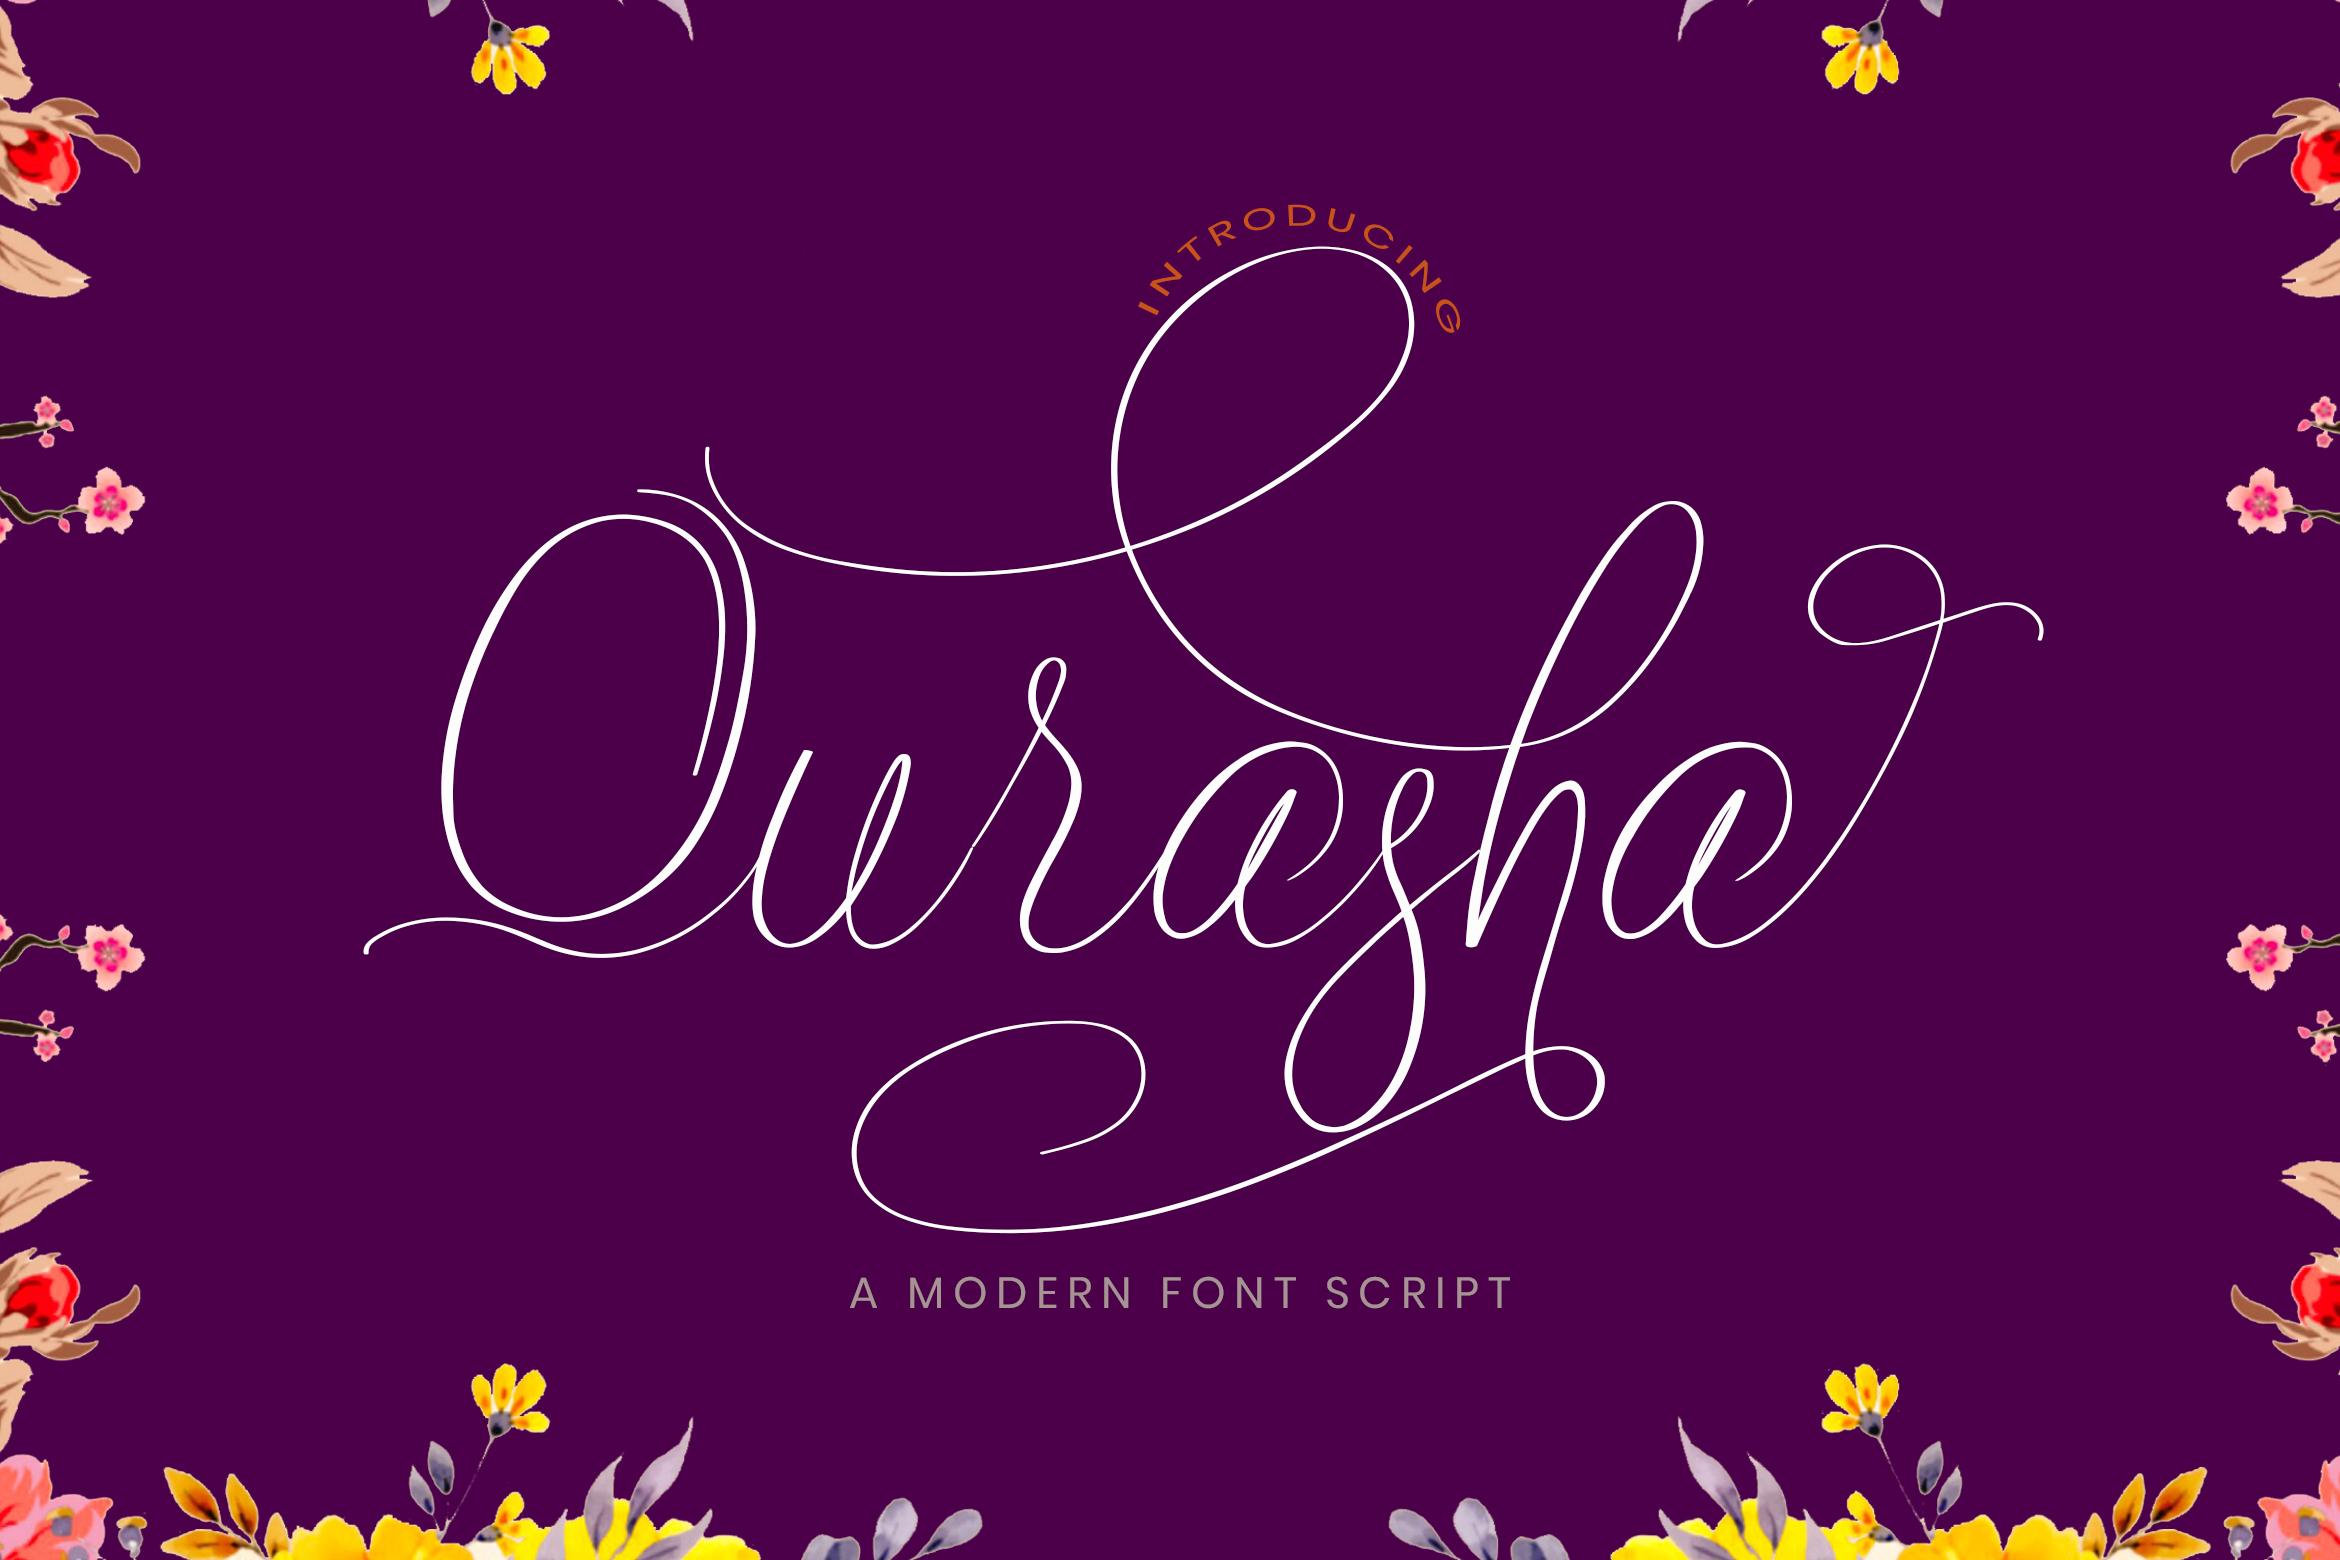 Qurasha Font